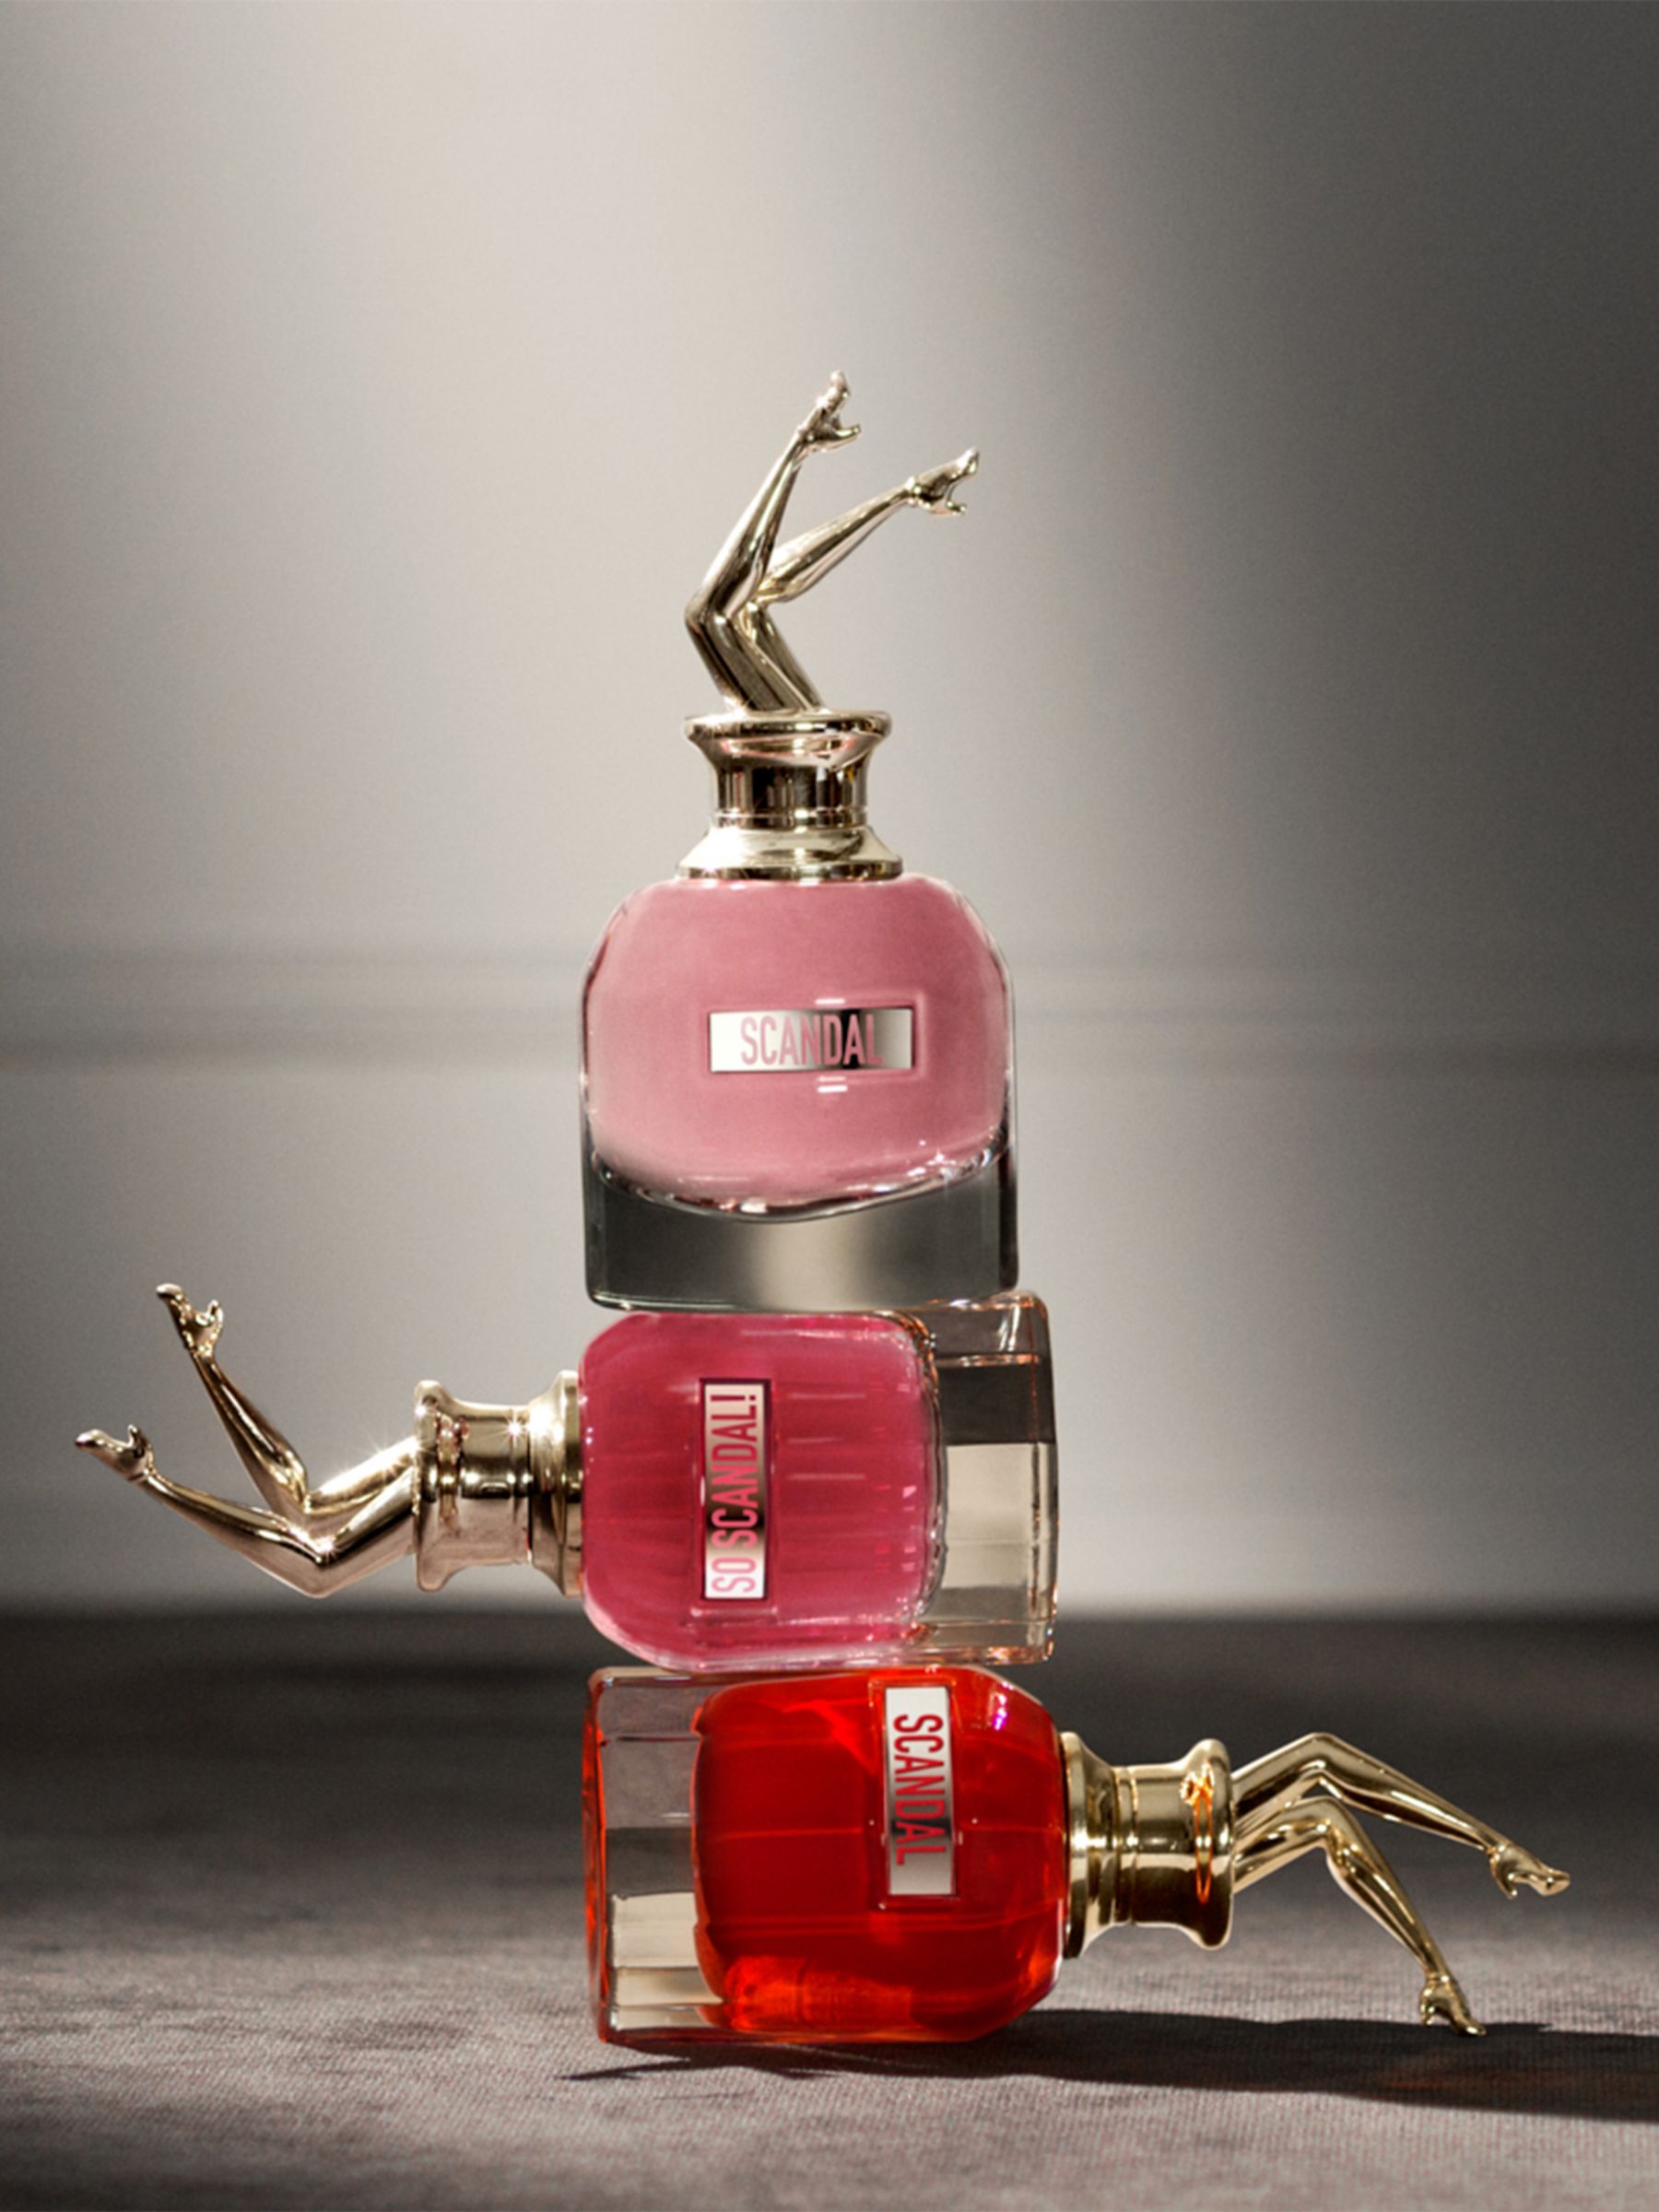 Jean Paul Gaultier Scandal Le Parfum, 30ml 6